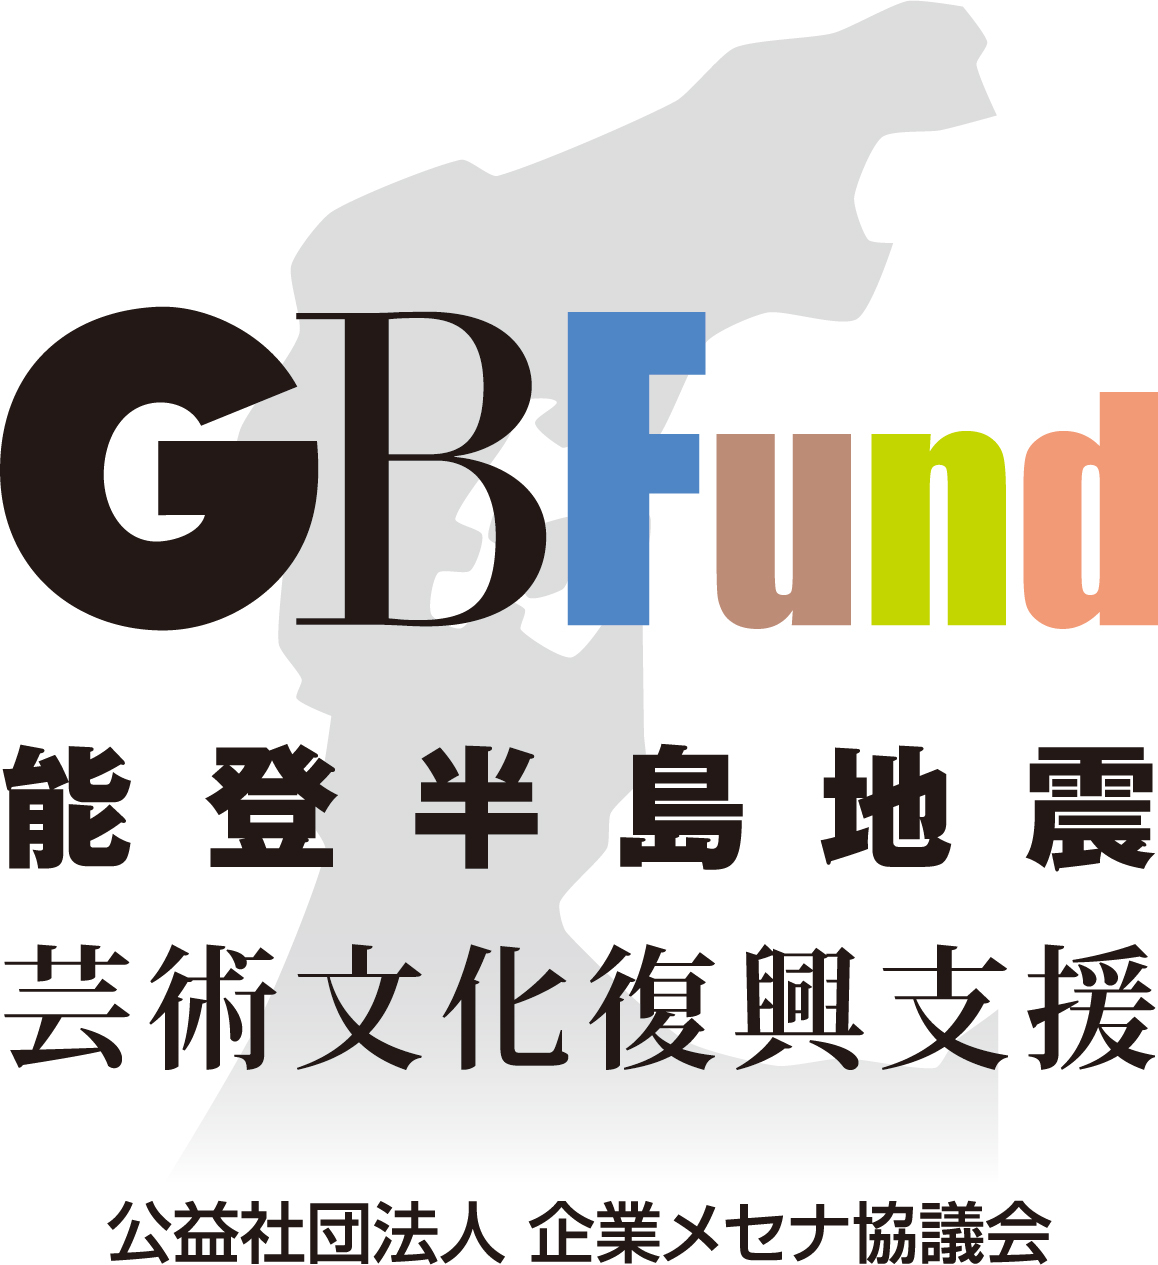 芸術・文化による復興支援ファンド「GBFund」<br>令和6年能登半島地震へのご支援のお願い